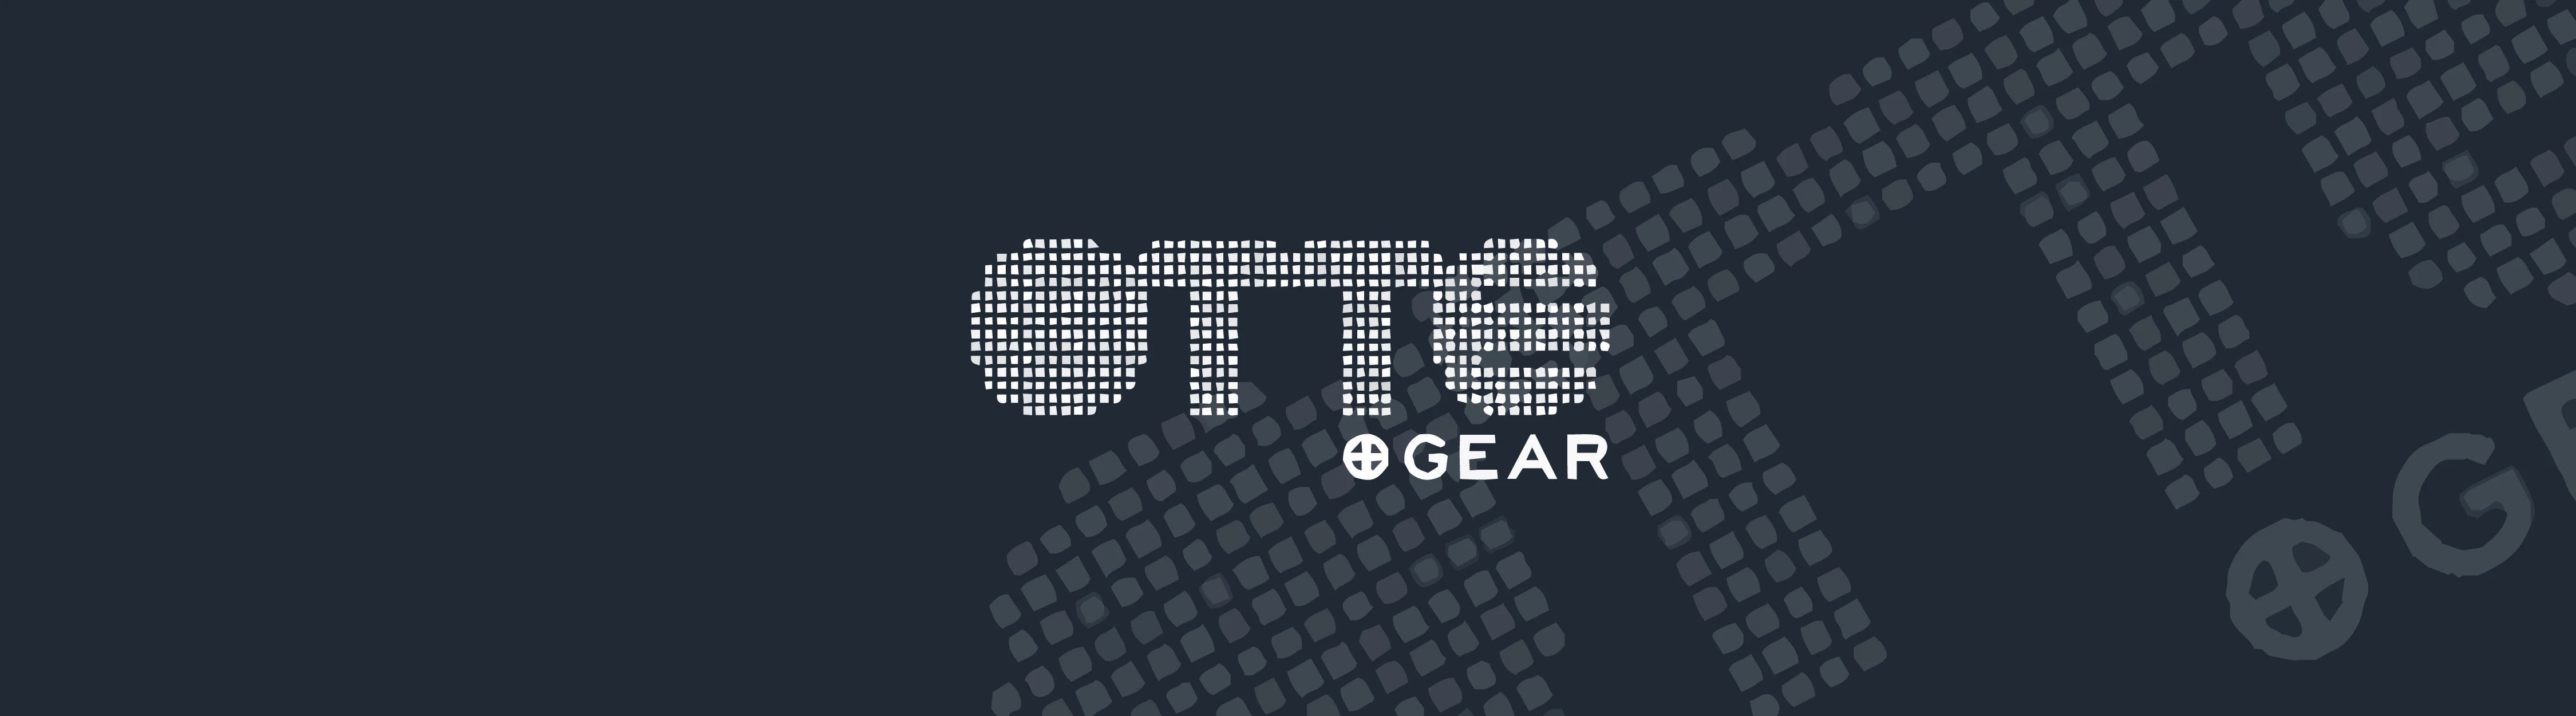 OTTE Gear